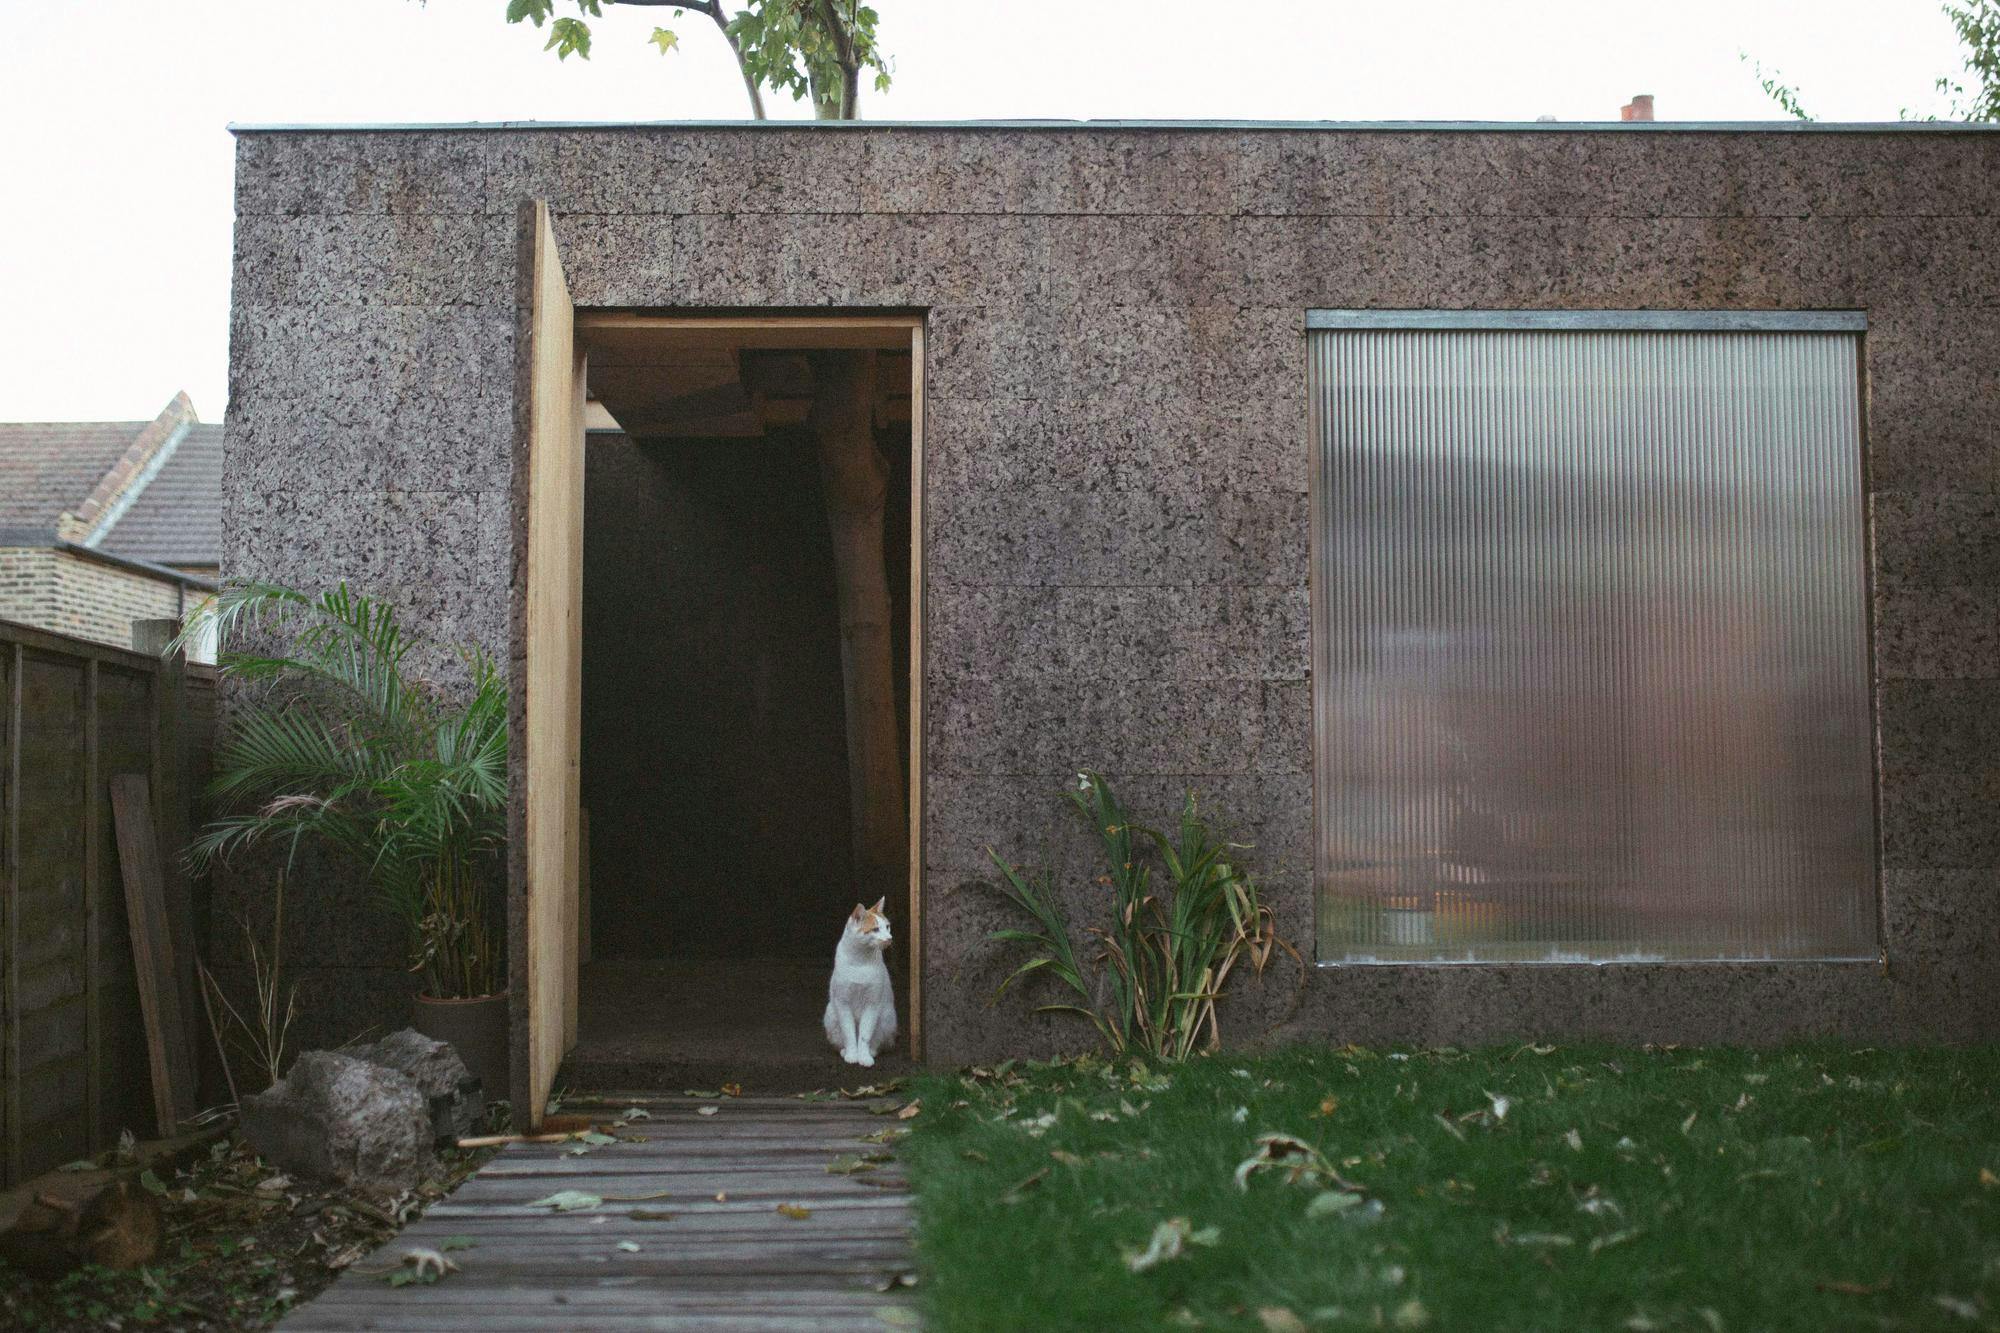 View of cat sitting in a doorway of a cork studio